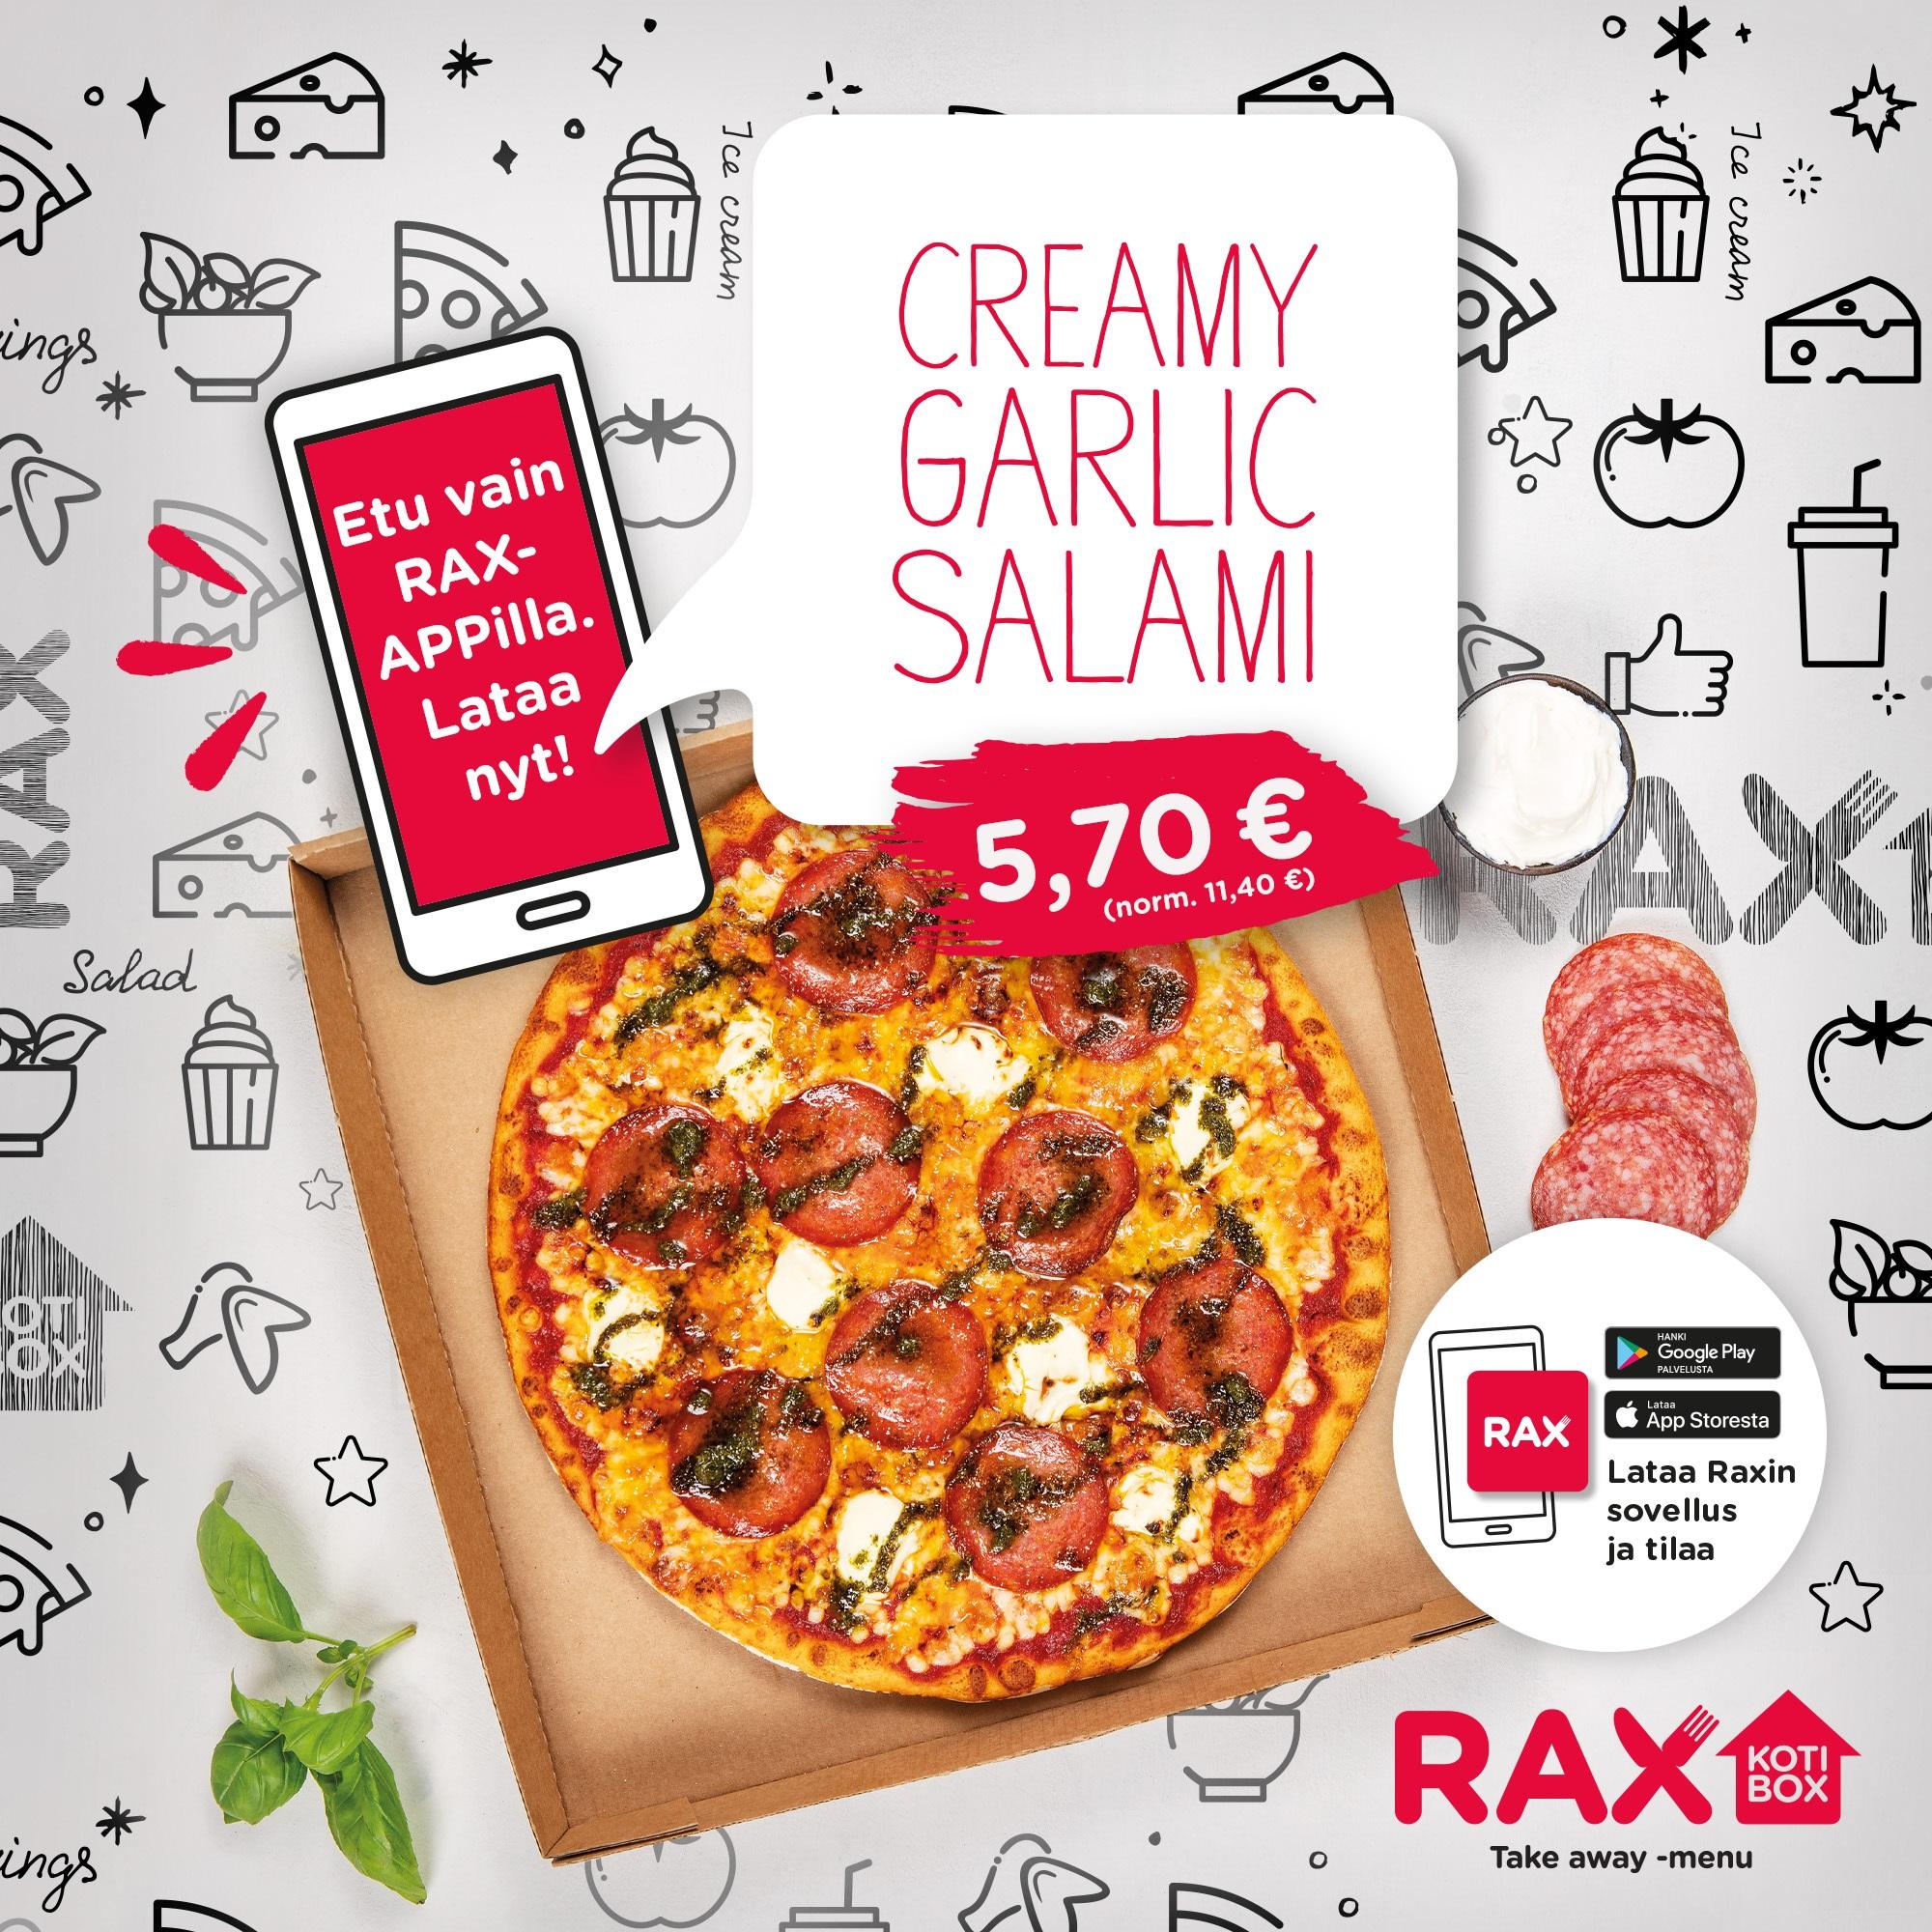 Rax Creamy Garlic Salami Rax App 2000x2000